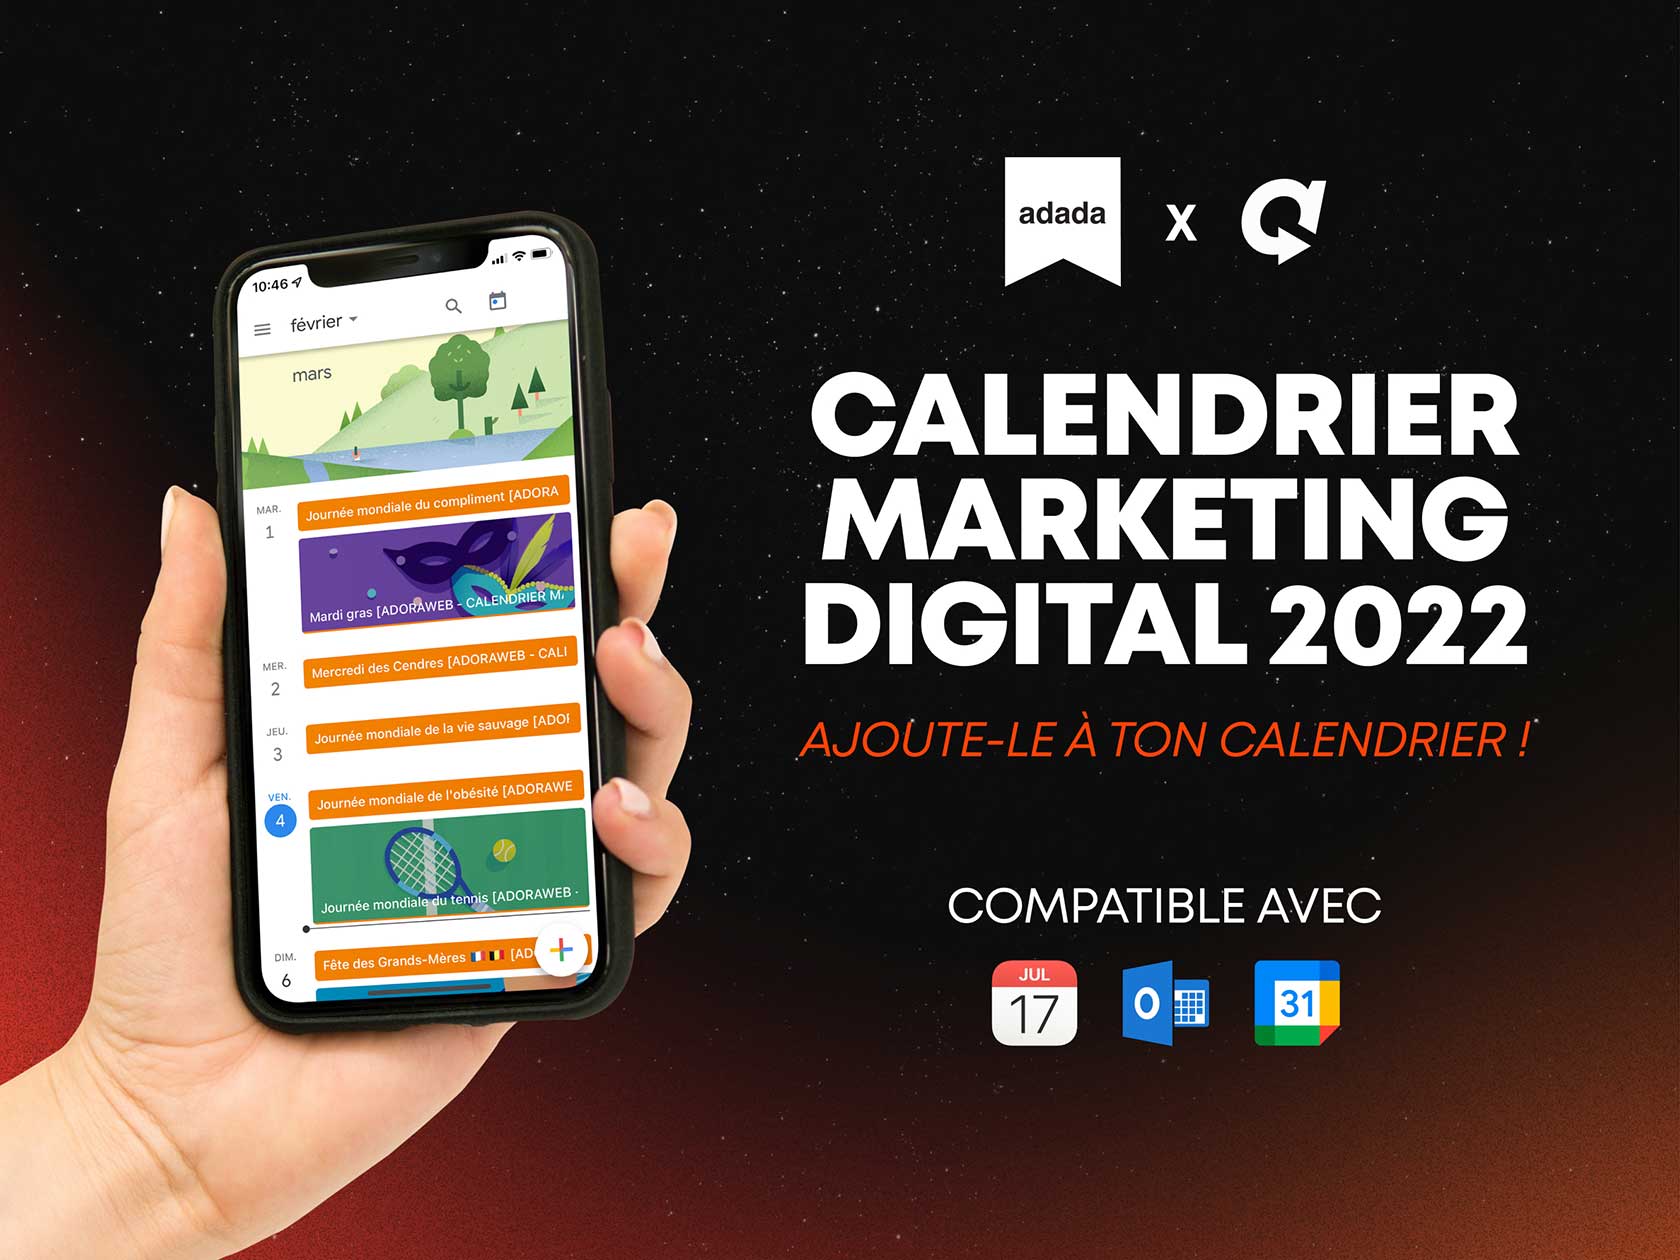 Télécharge ton calendrier marketing digital 2022 adoraweb x adada